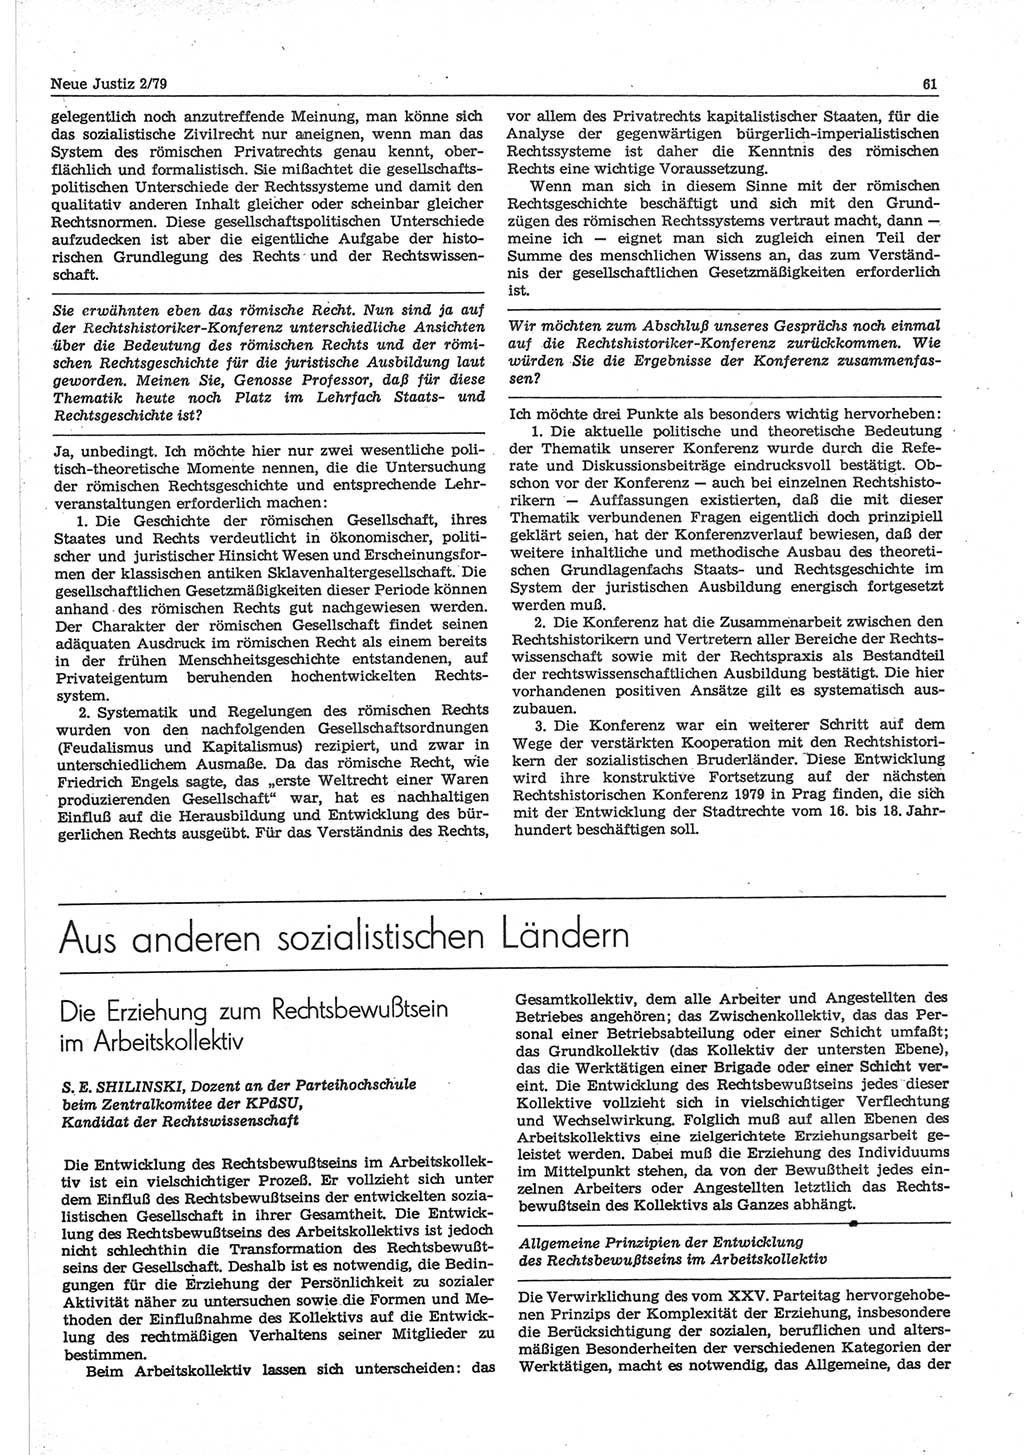 Neue Justiz (NJ), Zeitschrift für sozialistisches Recht und Gesetzlichkeit [Deutsche Demokratische Republik (DDR)], 33. Jahrgang 1979, Seite 61 (NJ DDR 1979, S. 61)